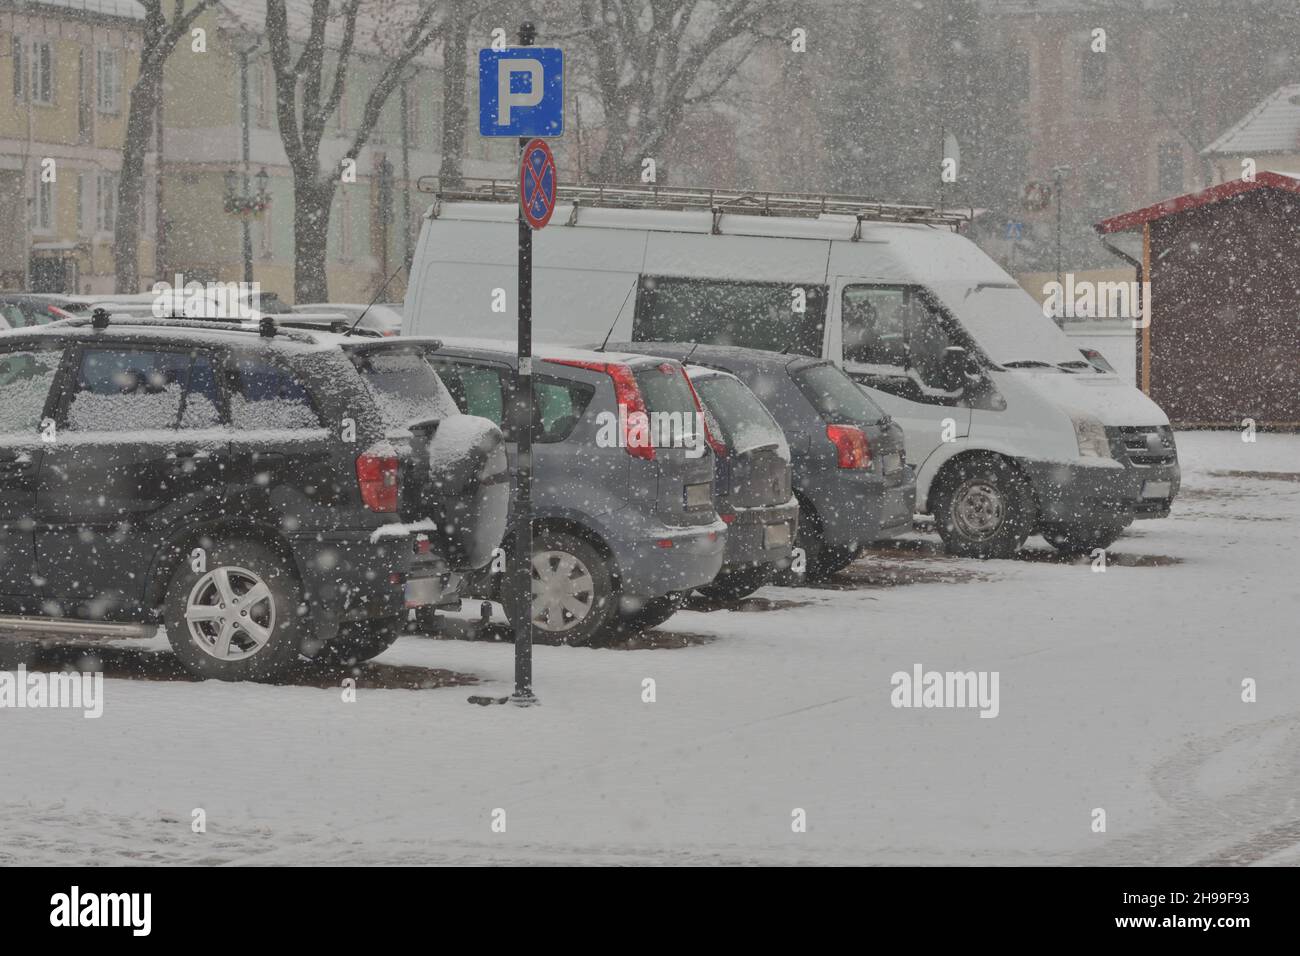 Route enneigée, traces de roue dans la neige et voitures enneigées lors de fortes chutes de neige.Jour. Banque D'Images